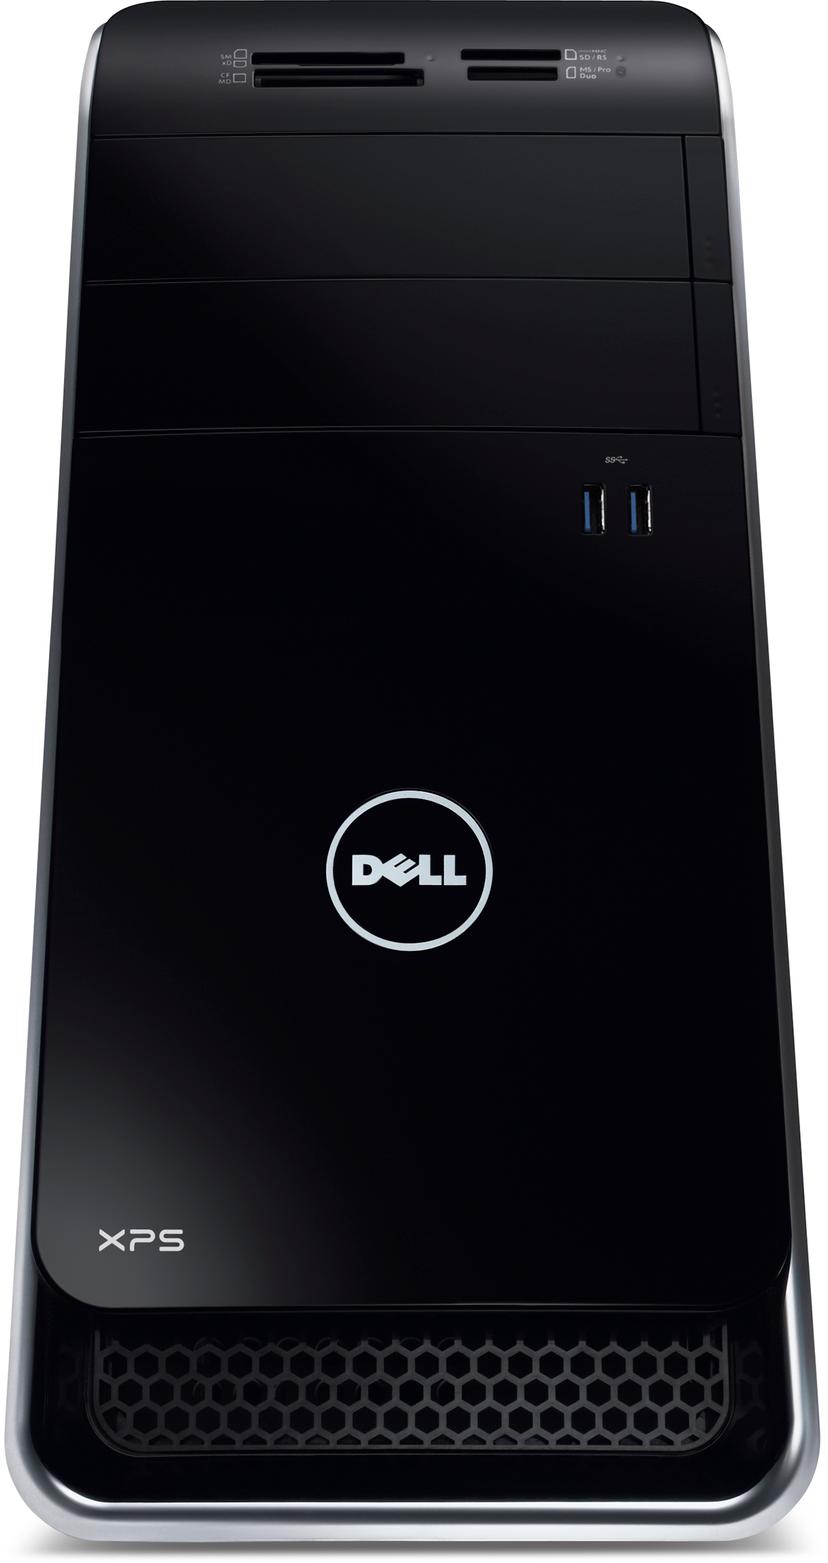 Dell XPS 8500 Ci5 8GB/1000 HD7570 W7HP | Dustin.dk